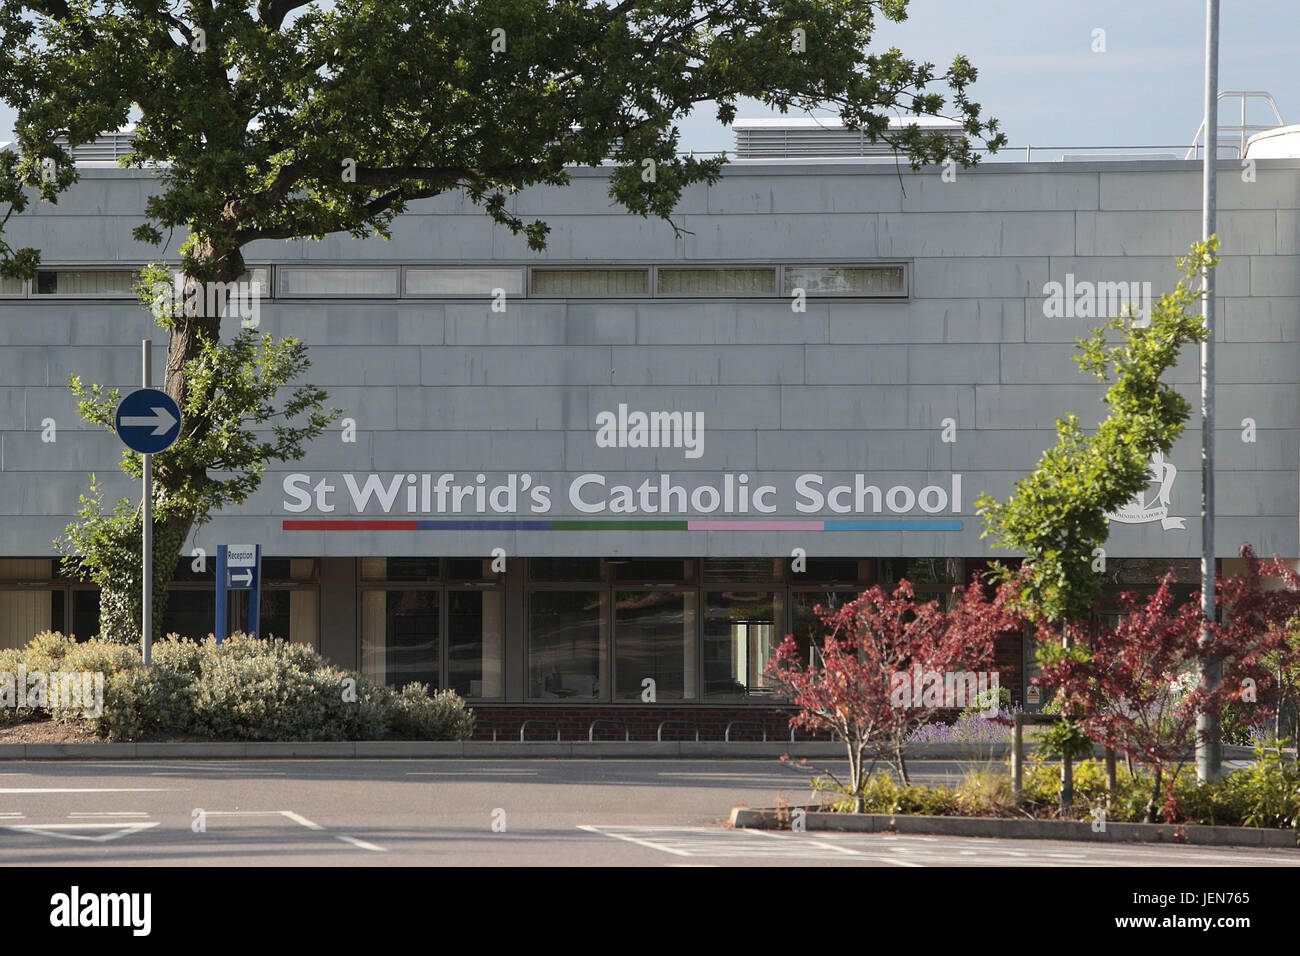 St Wilfrid's Catholic School, Crawley, West Sussex, Reino Unido. El 26 de junio, 2017. Los directores están acusados de intentar influir sobre la elección general atacando Tory políticas. A las familias se les envió una serie de mensajes políticos, por correo y en los medios de comunicación social - en vísperas del voto nacional el 8 de junio. St Wilfrid's Catholic School envió el anti-Tory tweet. Se registró el 21 de abril: "¿Qué sobre la educación, los servicios de salud mental, el NHS, atención social, todavía el voto conservador?" crédito: Nigel Bowles/Alamy Live News Foto de stock